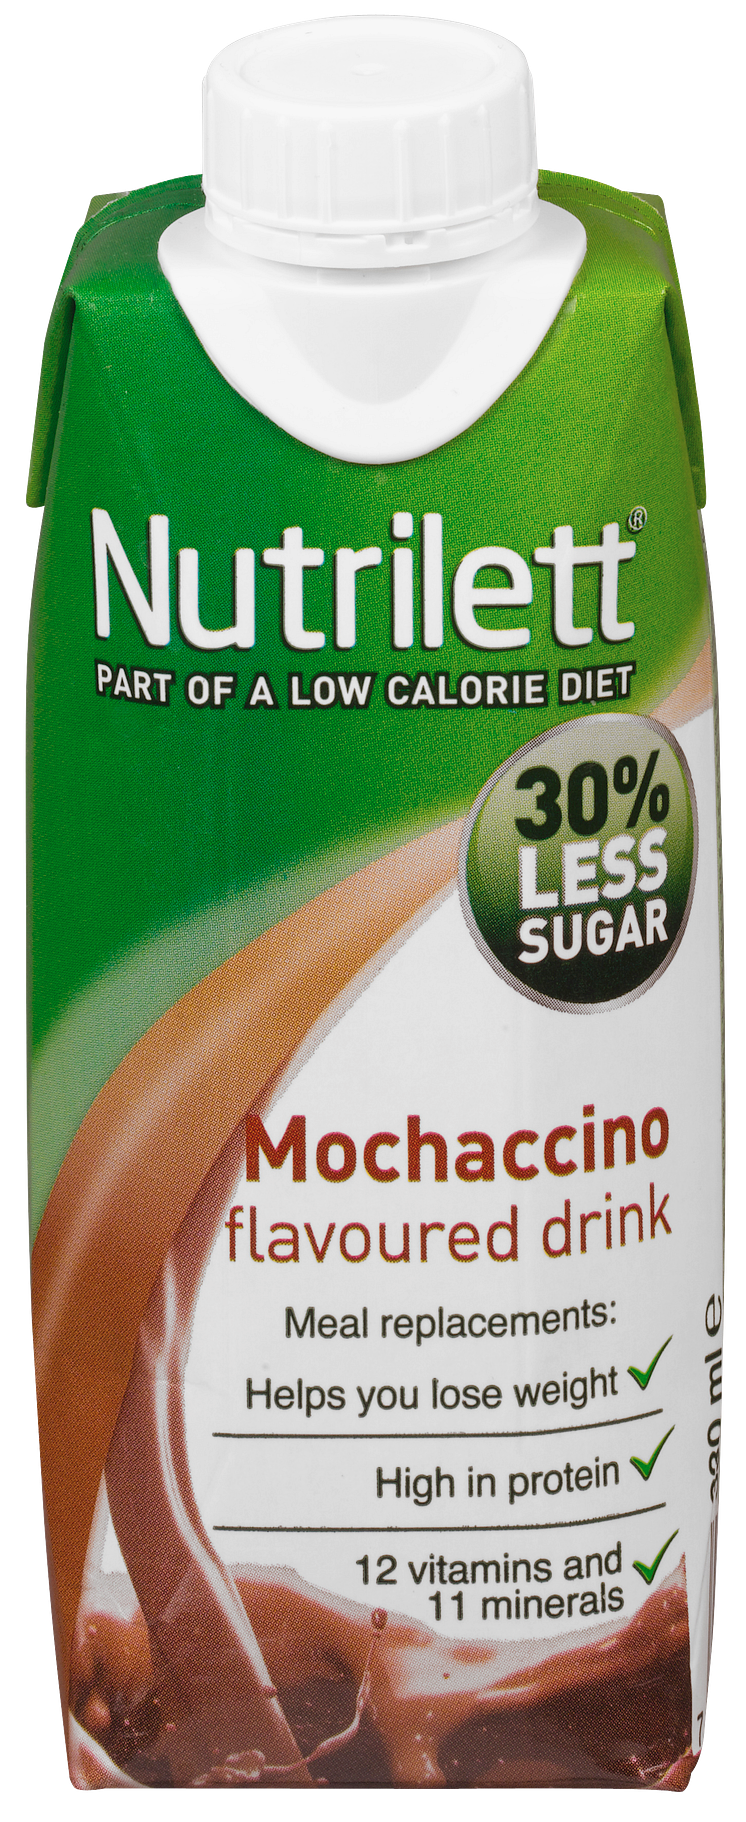 Nutrilett Mochaccino flavoured drink, 330 ml